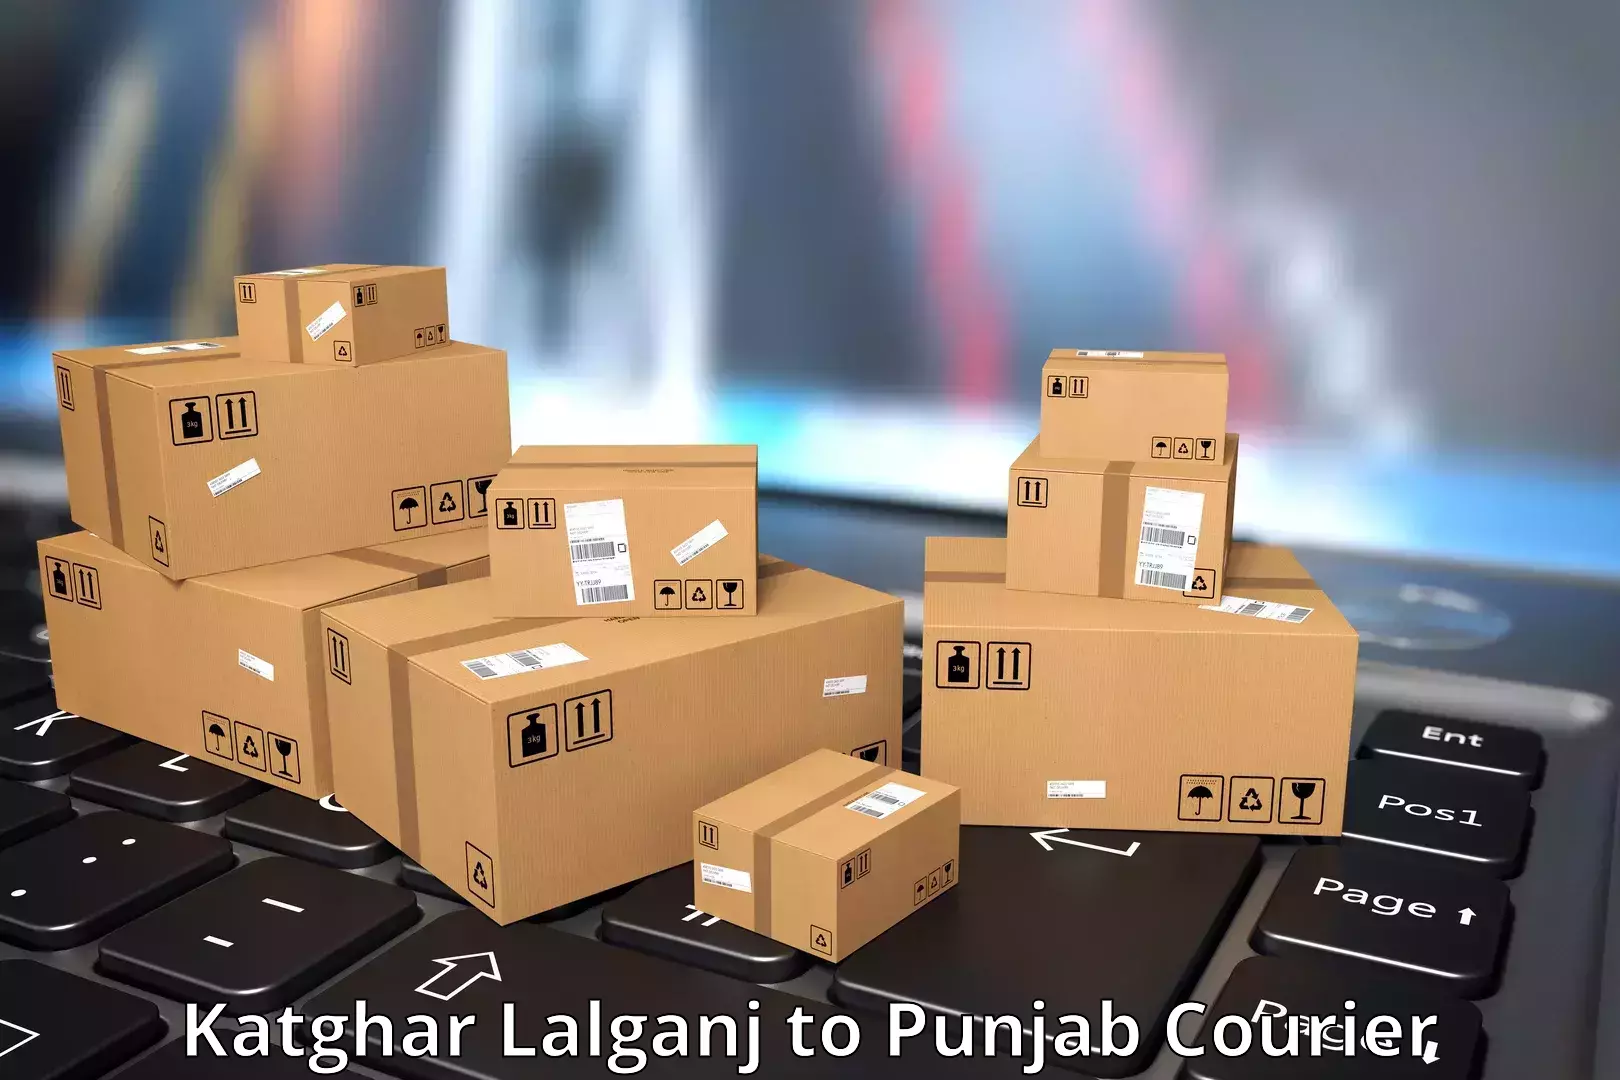 Round-the-clock parcel delivery Katghar Lalganj to Malerkotla